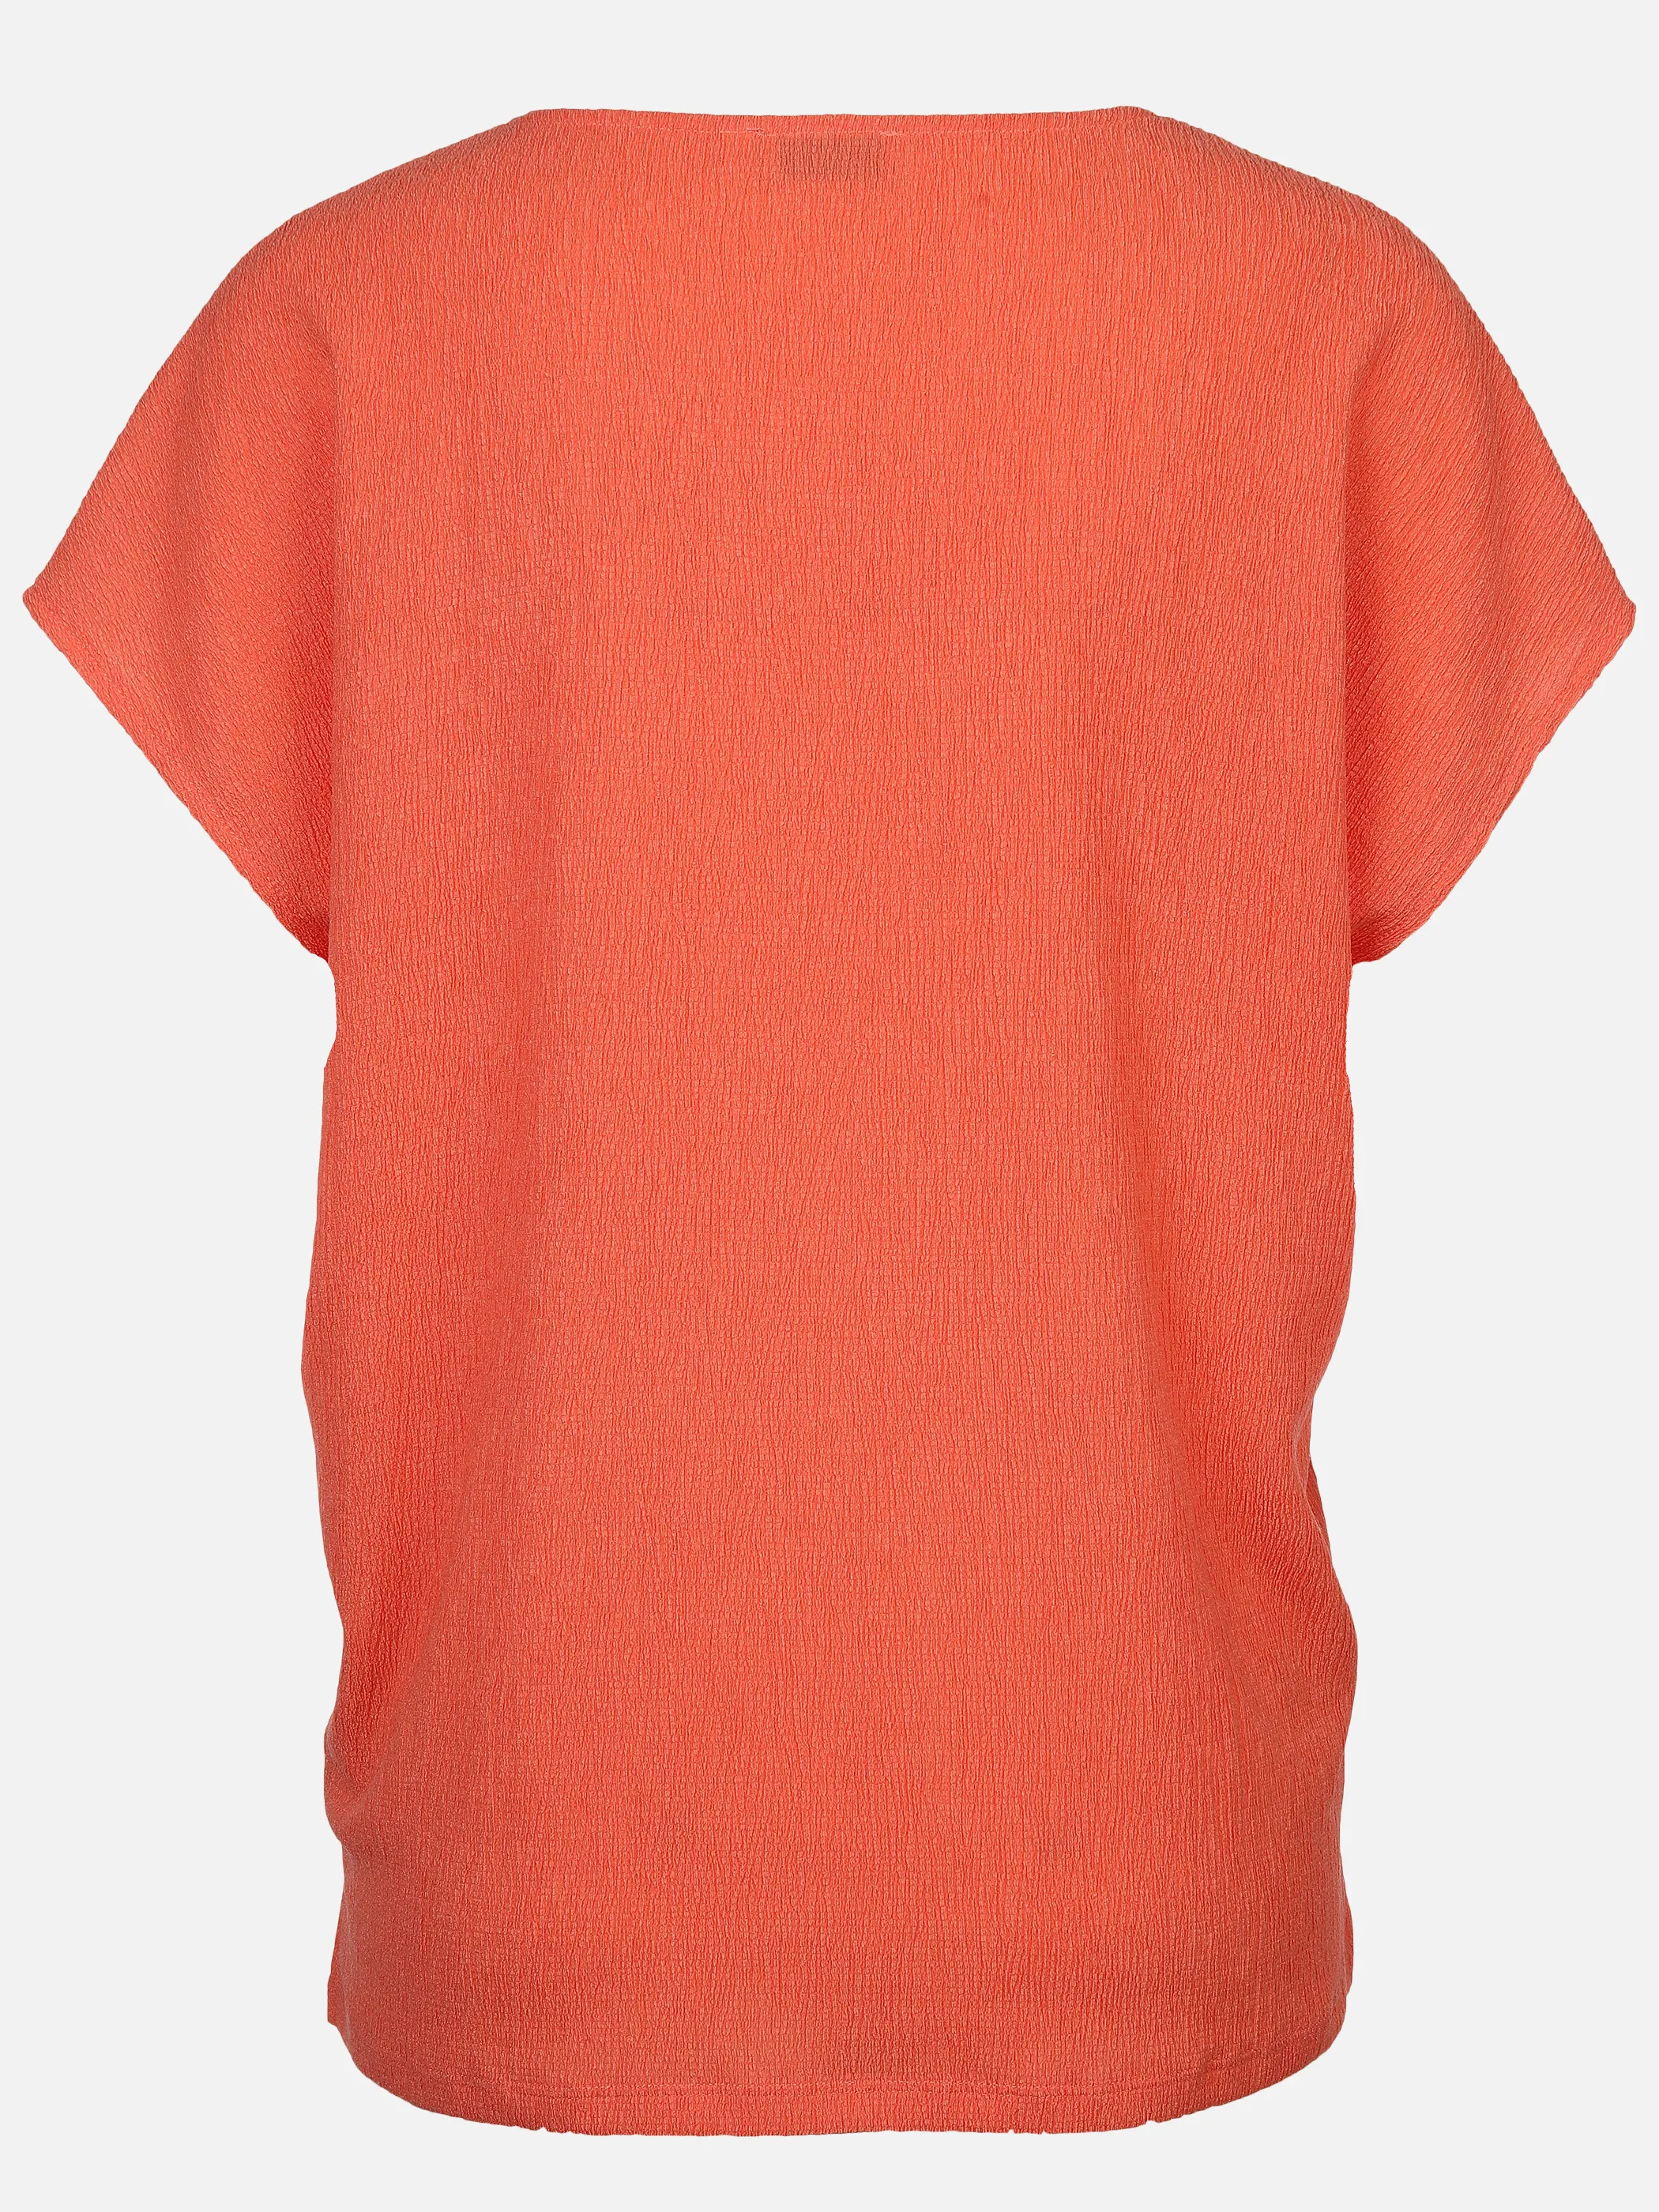 Lisa Tossa Da-Shirt in Crashoptik Orange 891199 PAPAYA 2